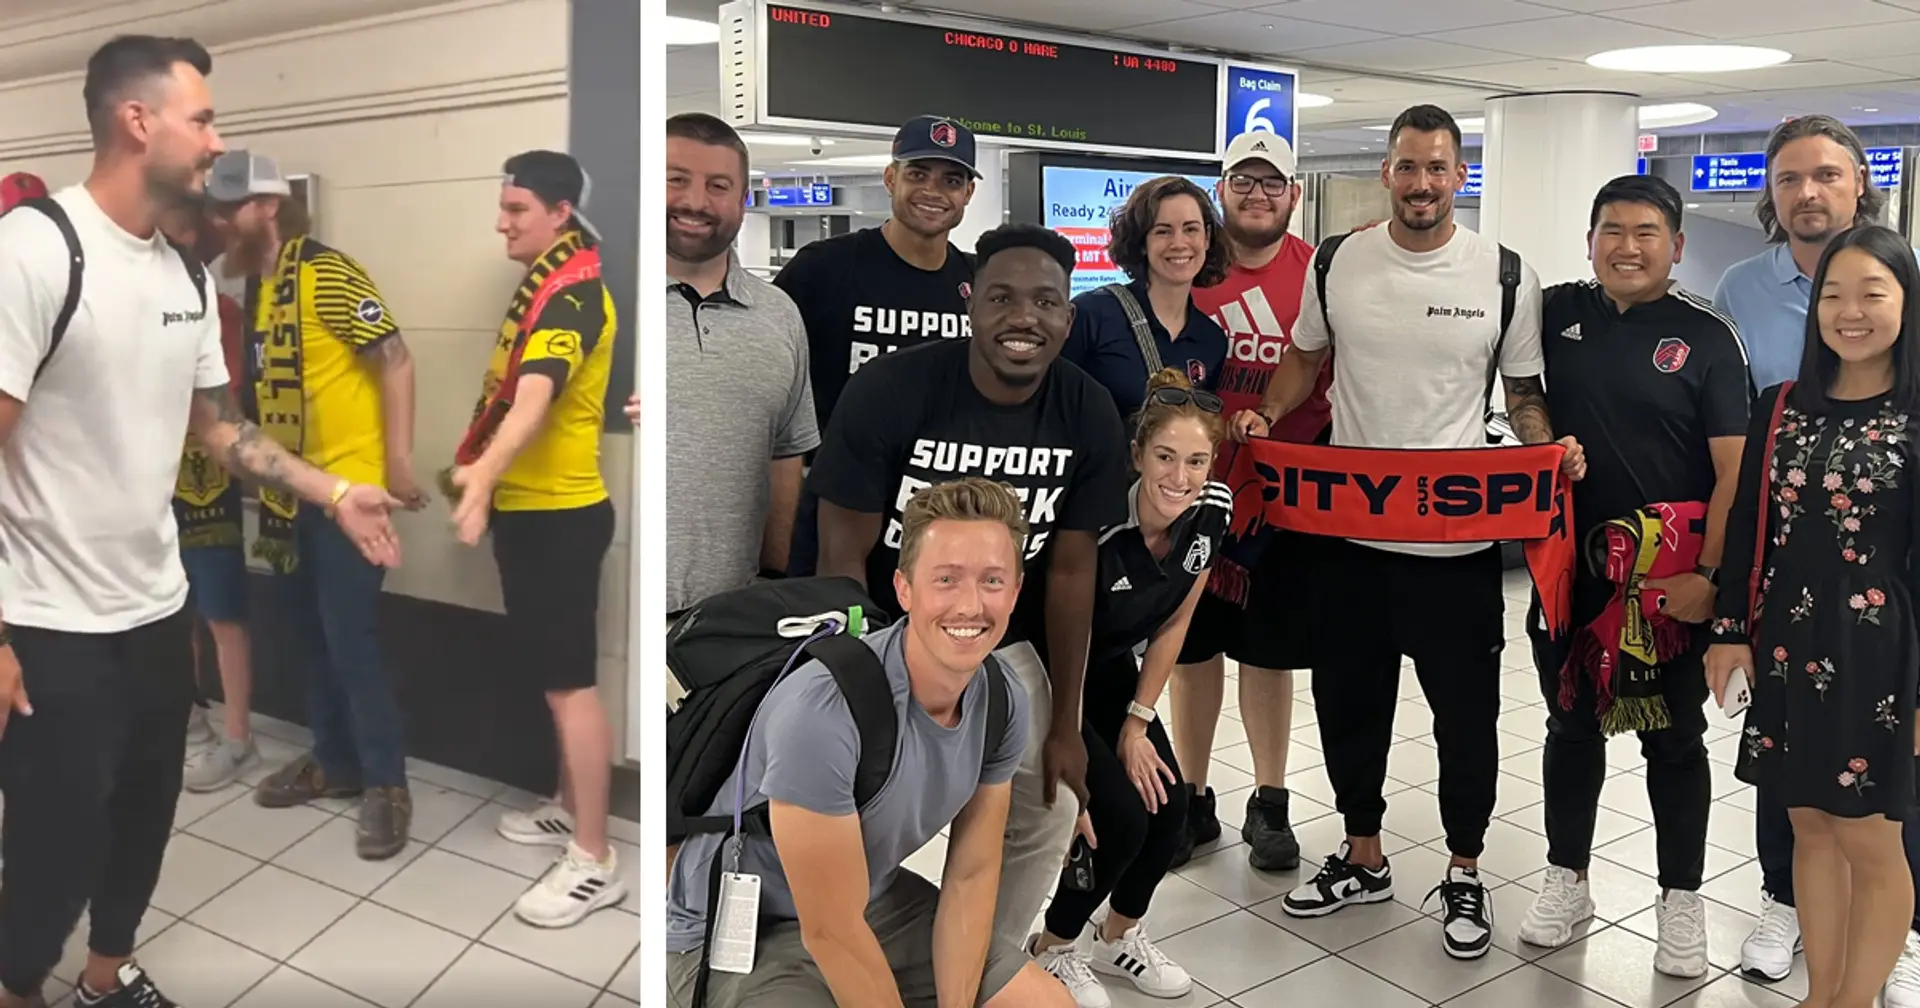 Herzlicher Empfang in den USA: Dortmund-Fans in St. Louis begrüßen Roman Bürki im Flughafen!